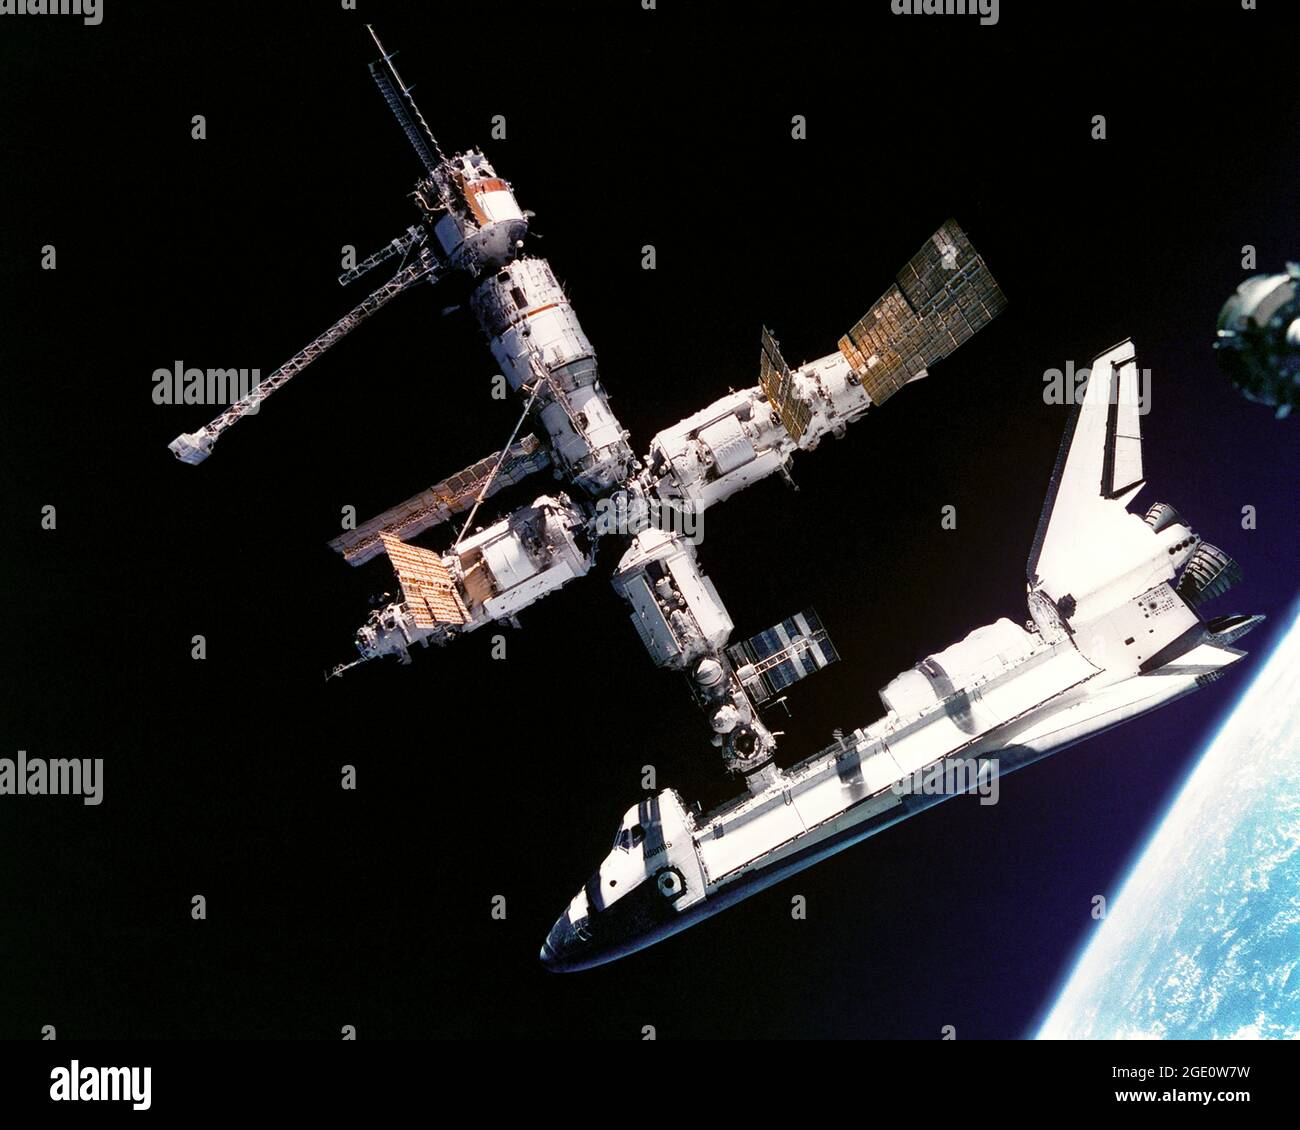 Cette vue de la navette spatiale Atlantis encore reliée à la station spatiale russe Mir a été photographiée par l'équipage Mir-19 le 4 juillet 1995. Les cosmonautes Anatoliy Y. Solovyev et Nikolai M. Budarin, respectivement commandant de Mir-19 et ingénieur de vol, ont temporairement désancré l'engin spatial Soyouz du groupe d'éléments Mir pour effectuer un bref survol. Ils ont pris des photos tandis que l'équipage du STS-71, avec les trois membres de l'équipage de Mir-18 à bord, a désancré Atlantis pour l'achèvement de cette étape des activités conjointes. Solovyev et Budarin avaient été taxés à la station spatiale Mir par la STS-71. Banque D'Images